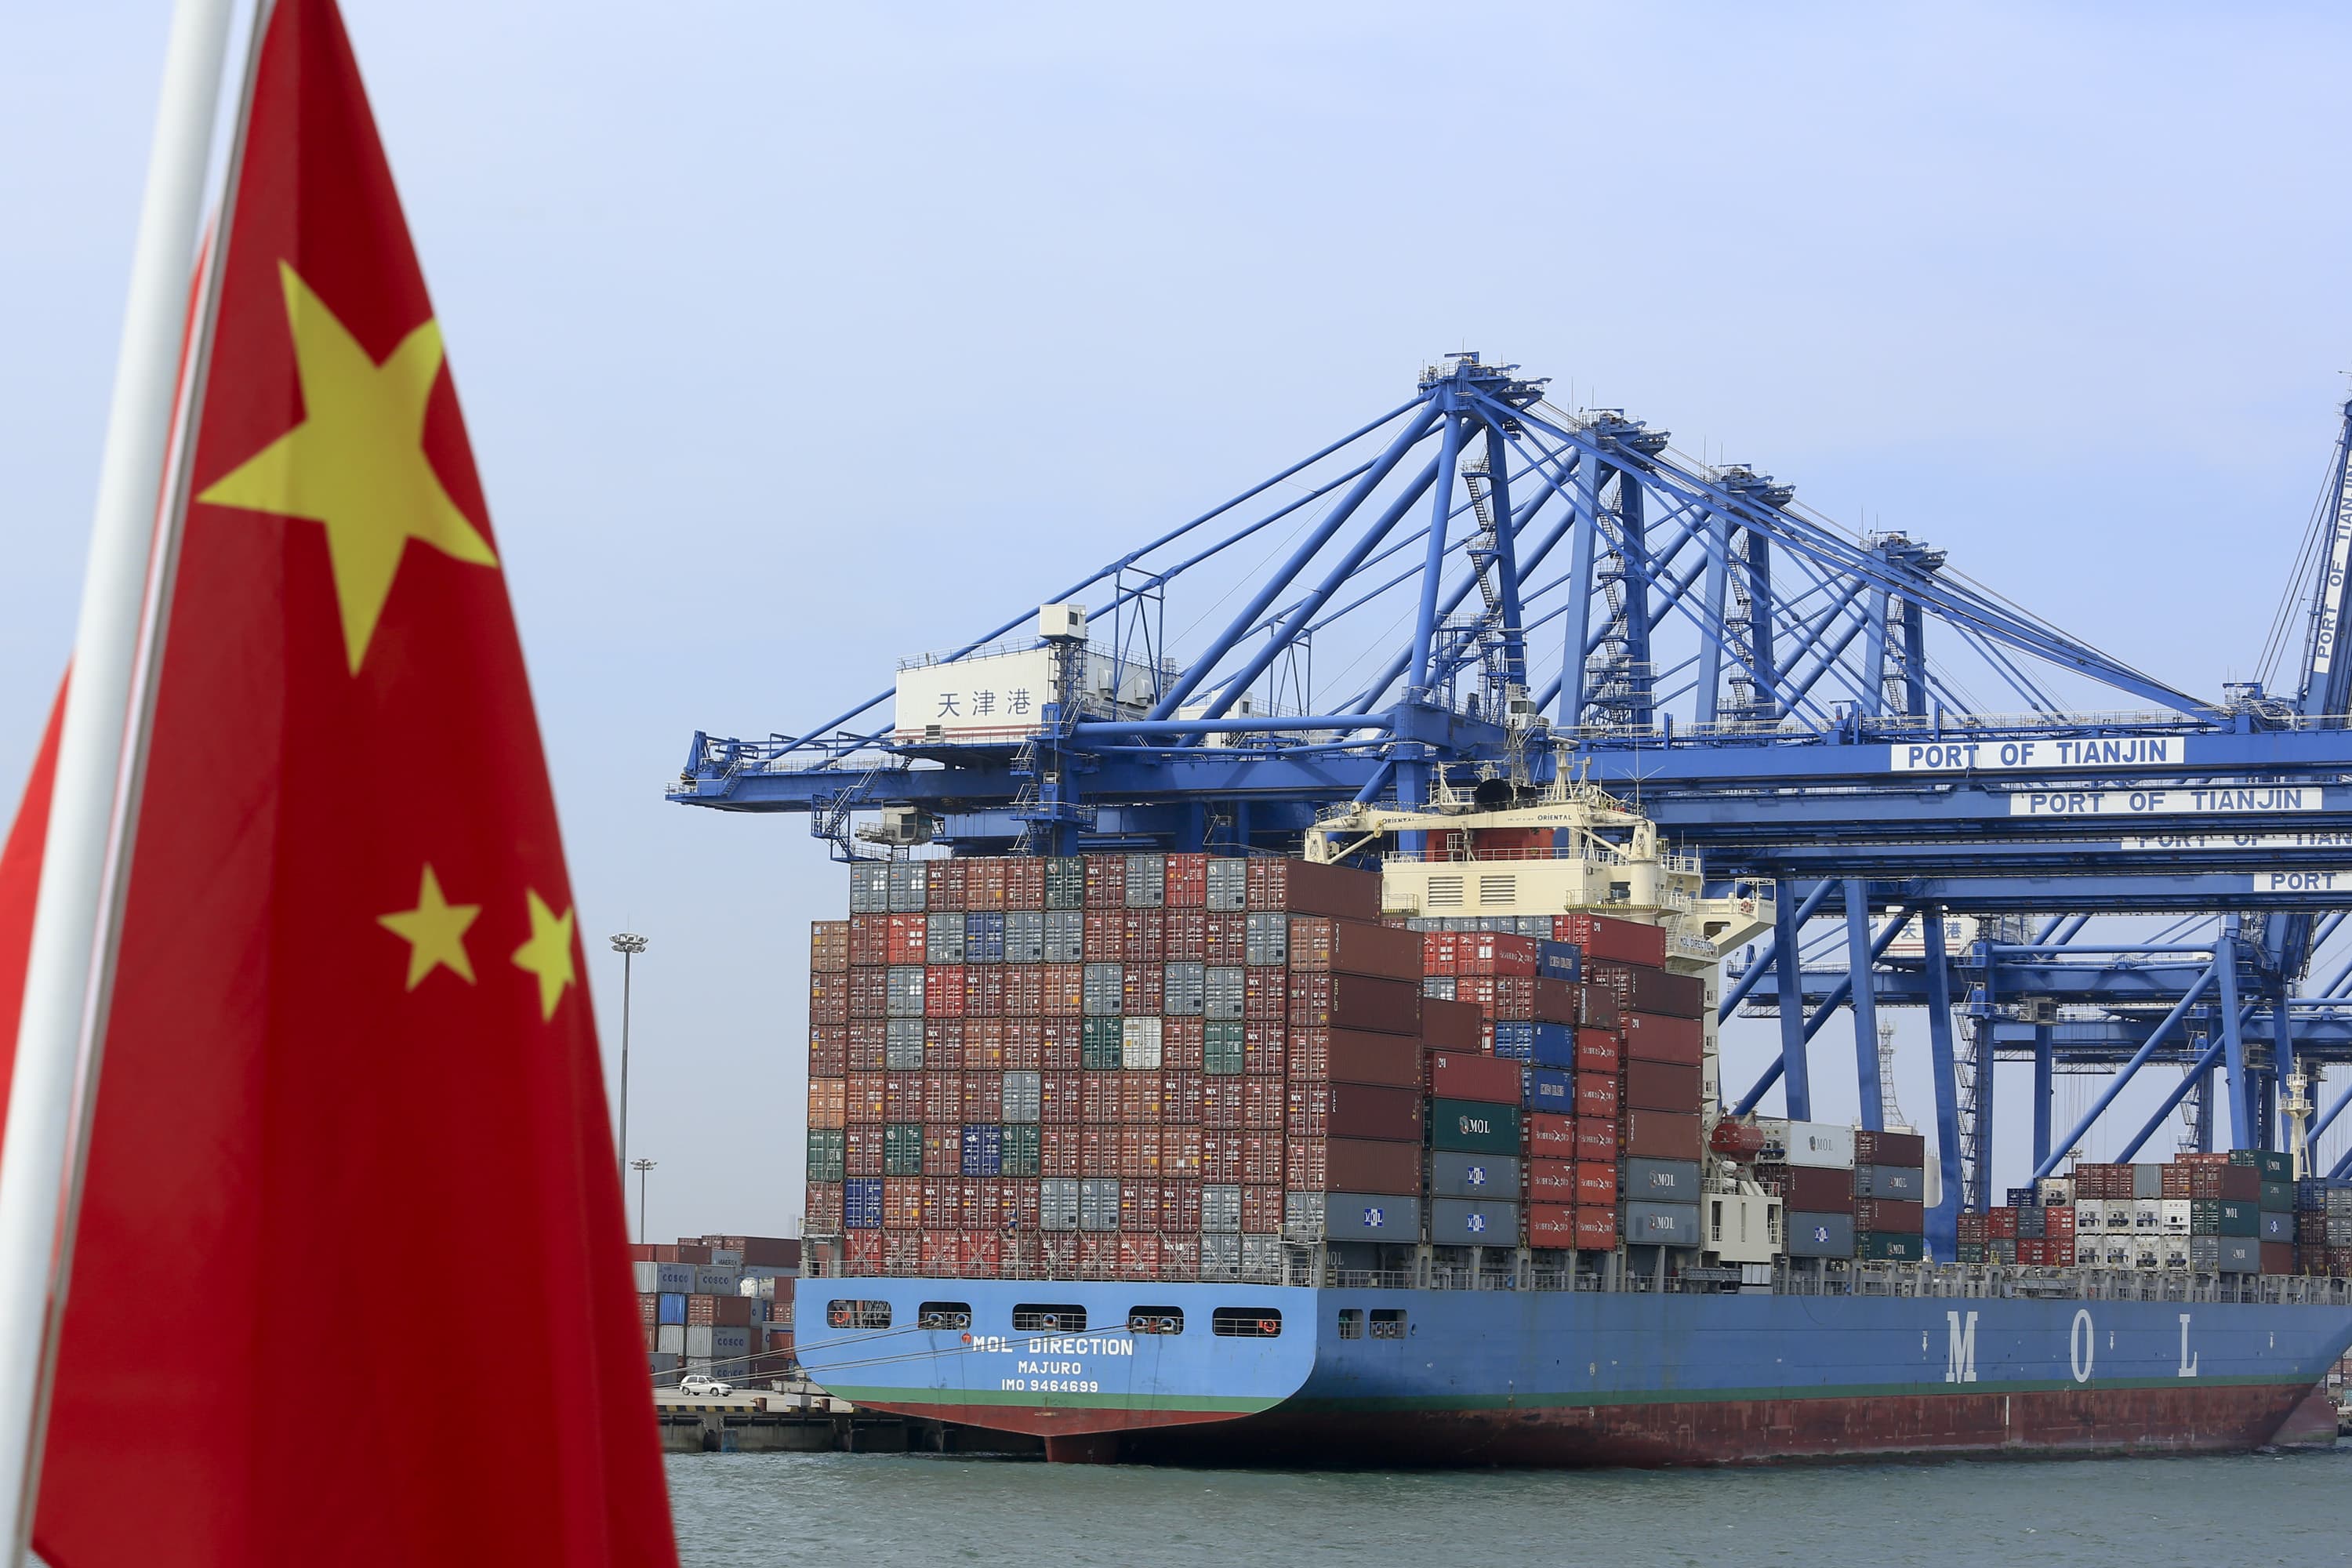 china february trade, imports, exports: beijing economic data